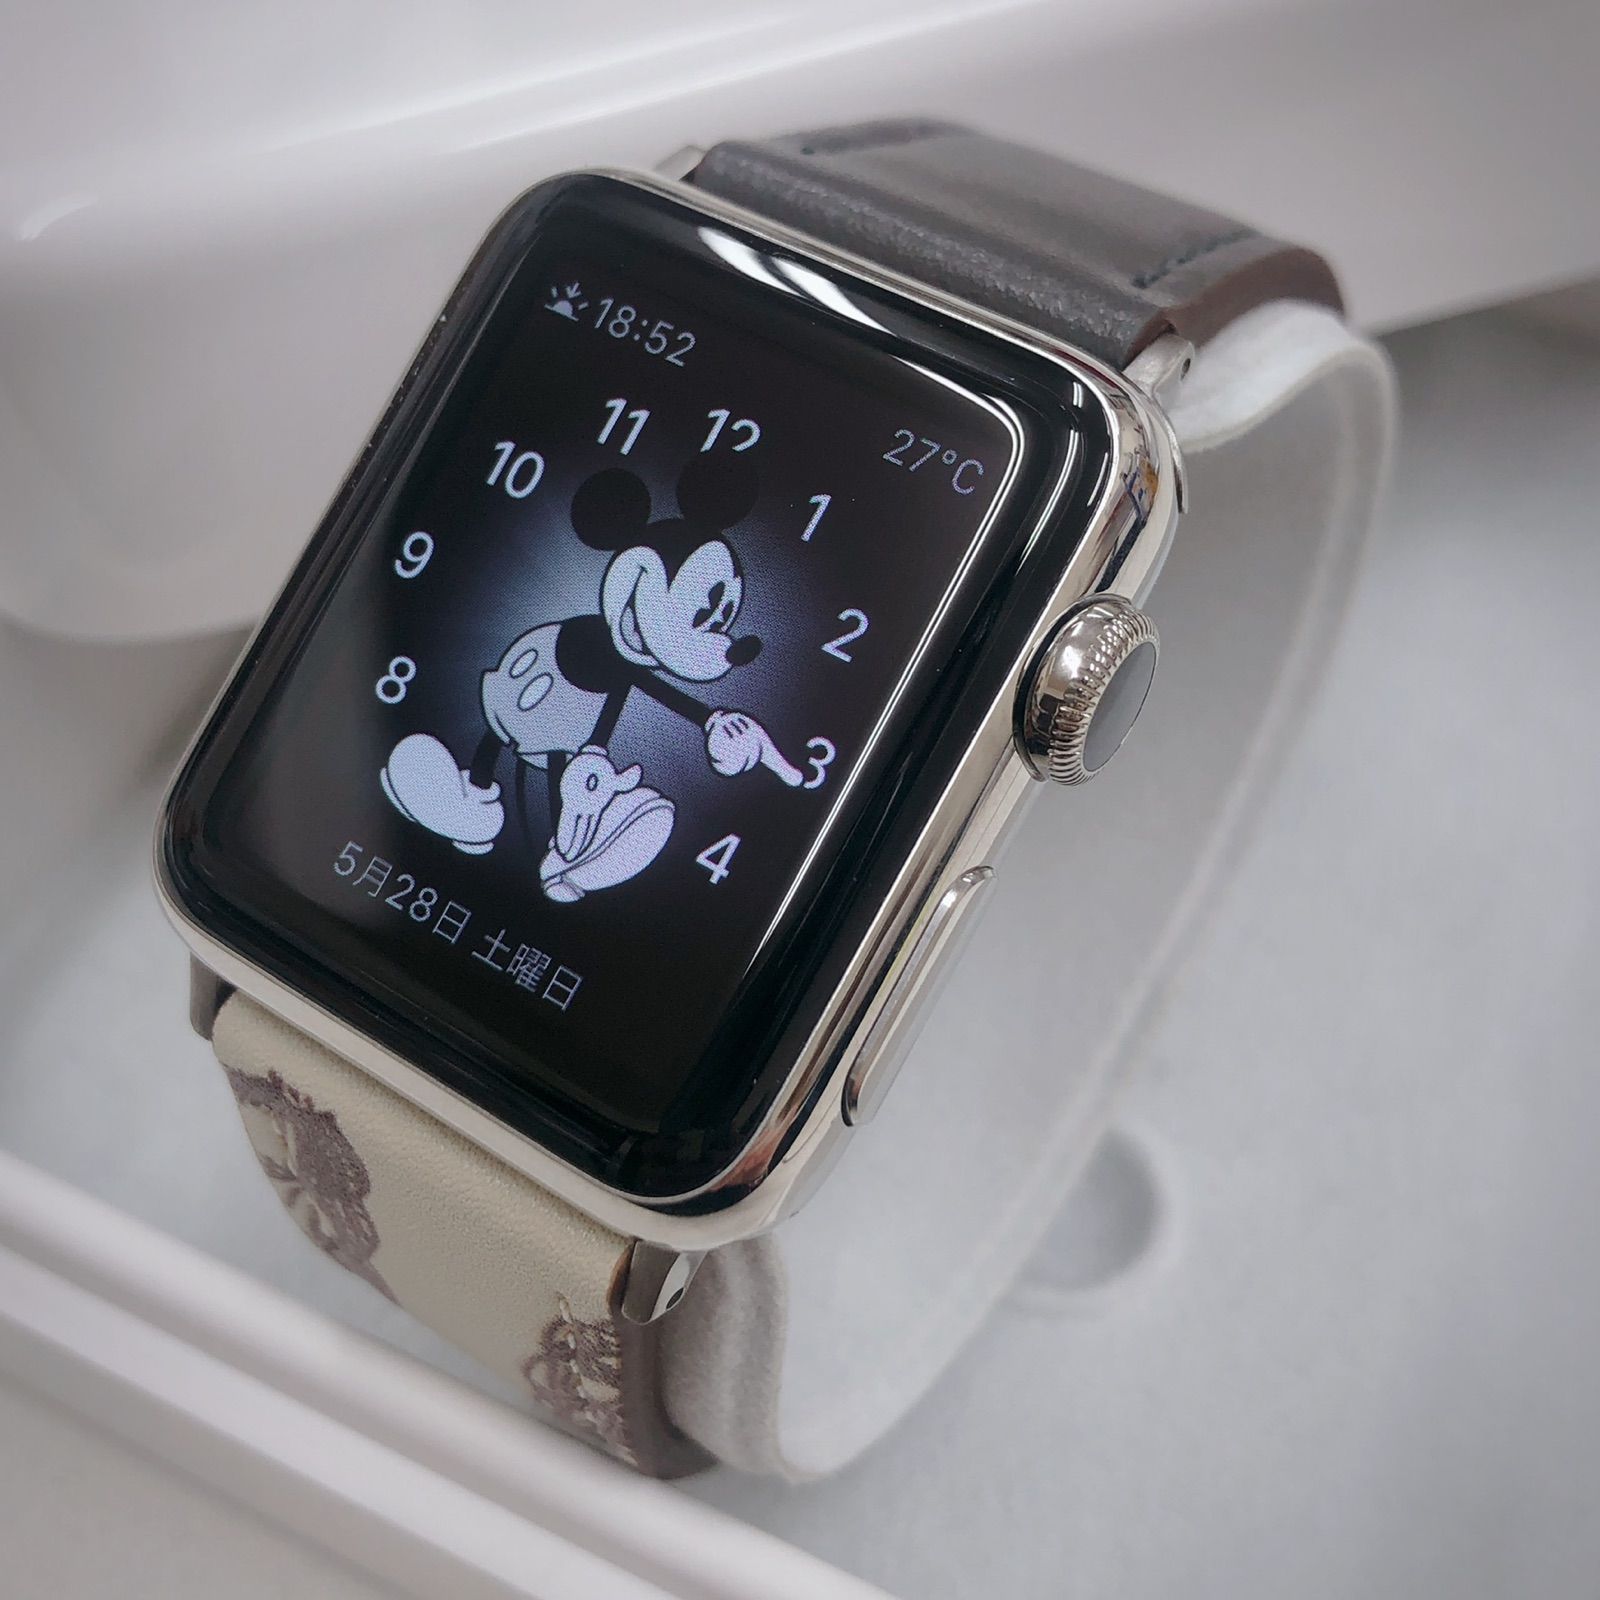 Apple Watch アップルウォッチ ステンレス 38mm - メルカリ